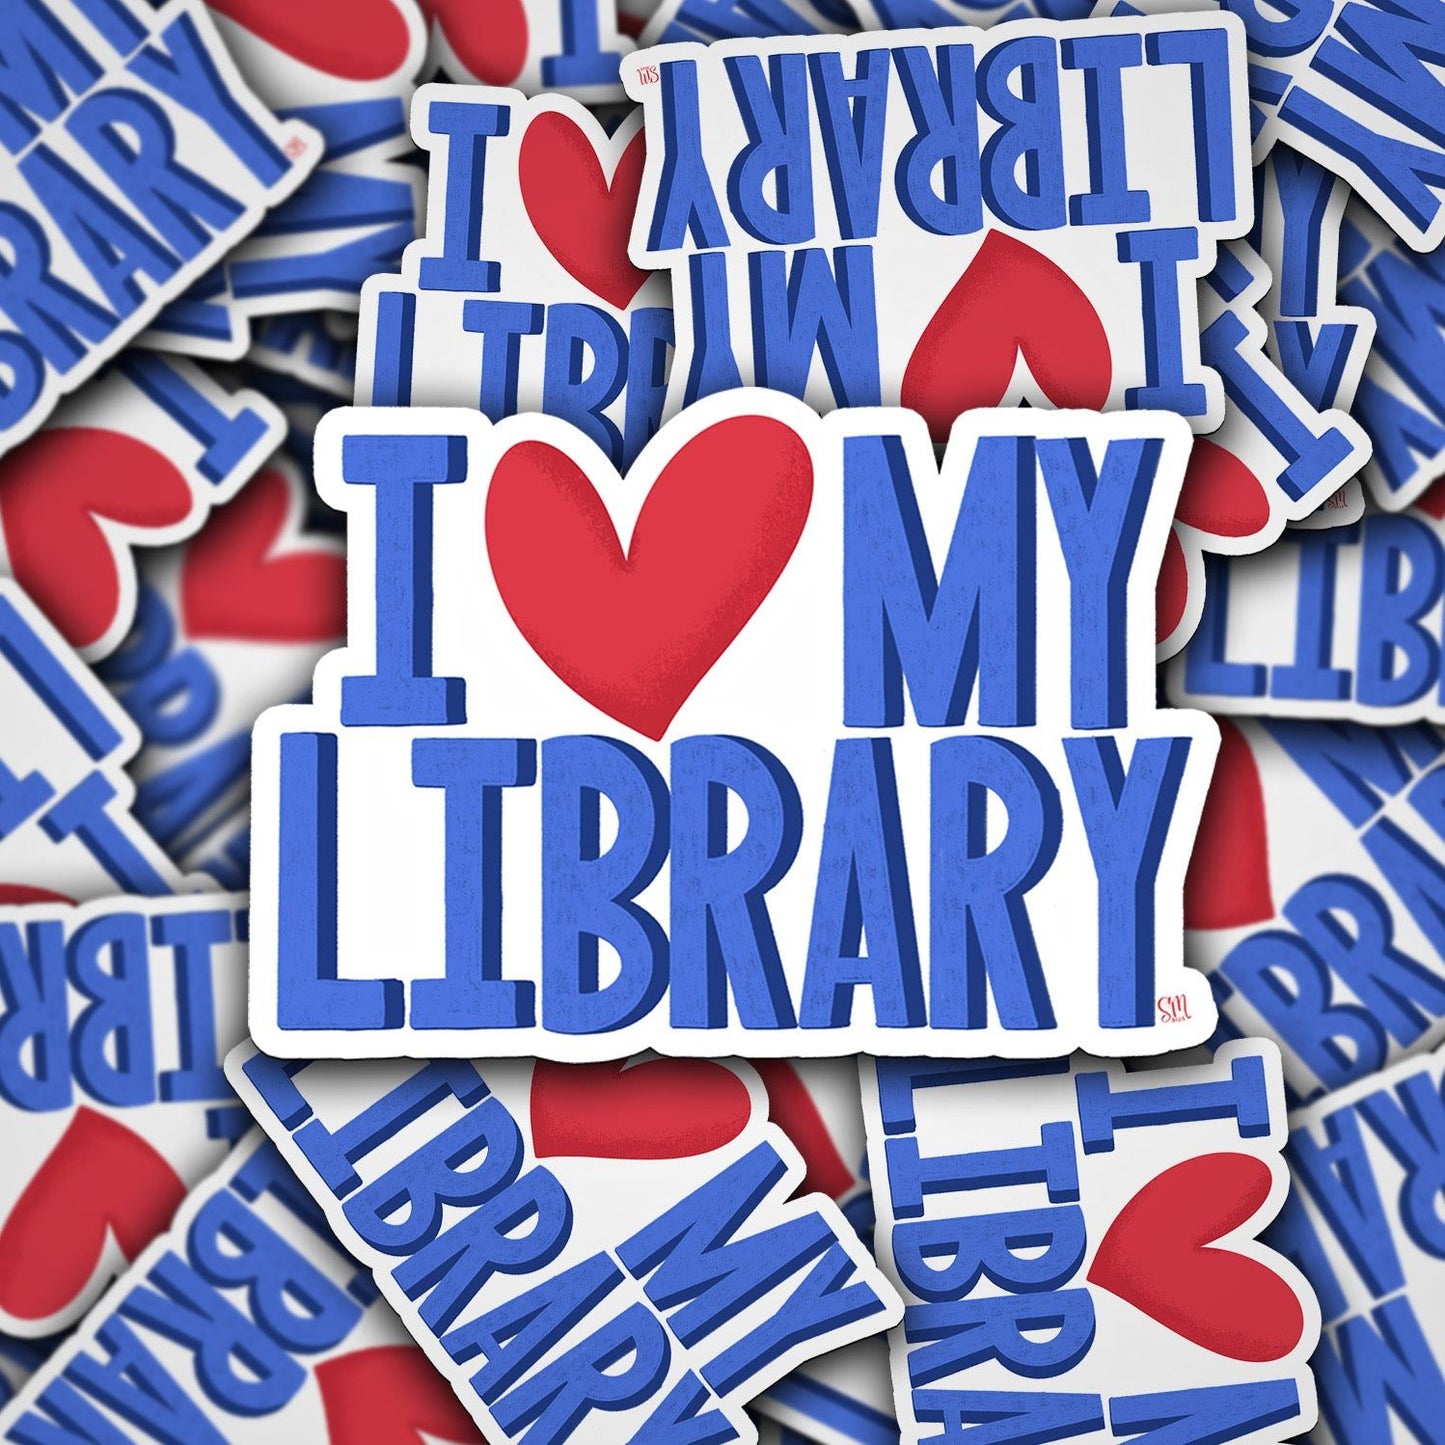 I ❤️ My Library Vinyl Sticker